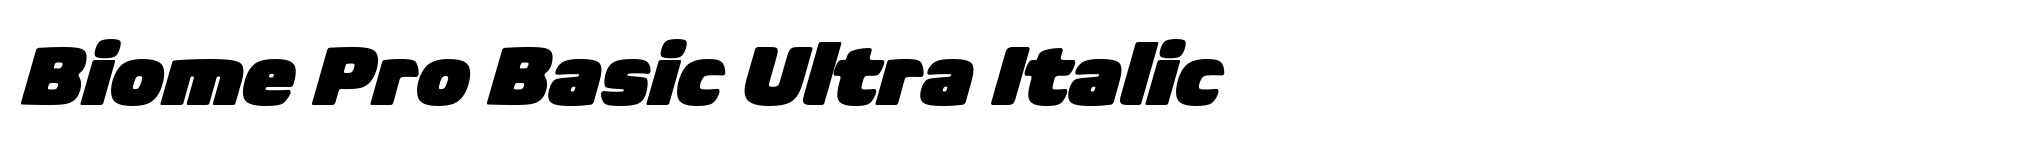 Biome Pro Basic Ultra Italic image